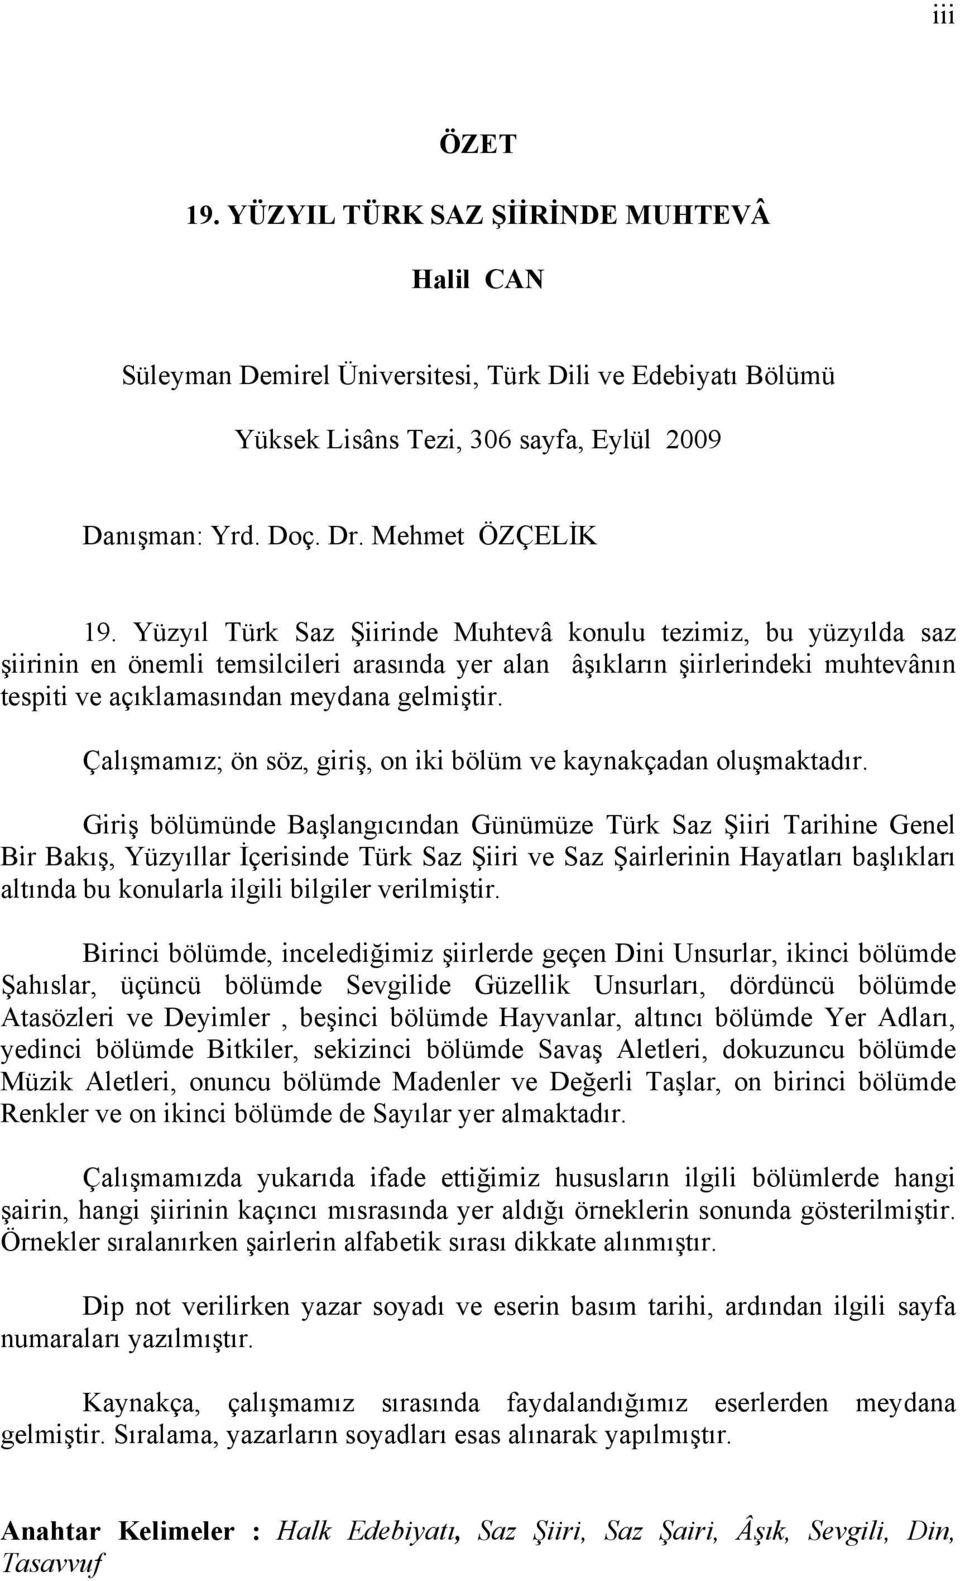 Yüzyıl Türk Saz Şiirinde Muhtevâ konulu tezimiz, bu yüzyılda saz şiirinin en önemli temsilcileri arasında yer alan âşıkların şiirlerindeki muhtevânın tespiti ve açıklamasından meydana gelmiştir.